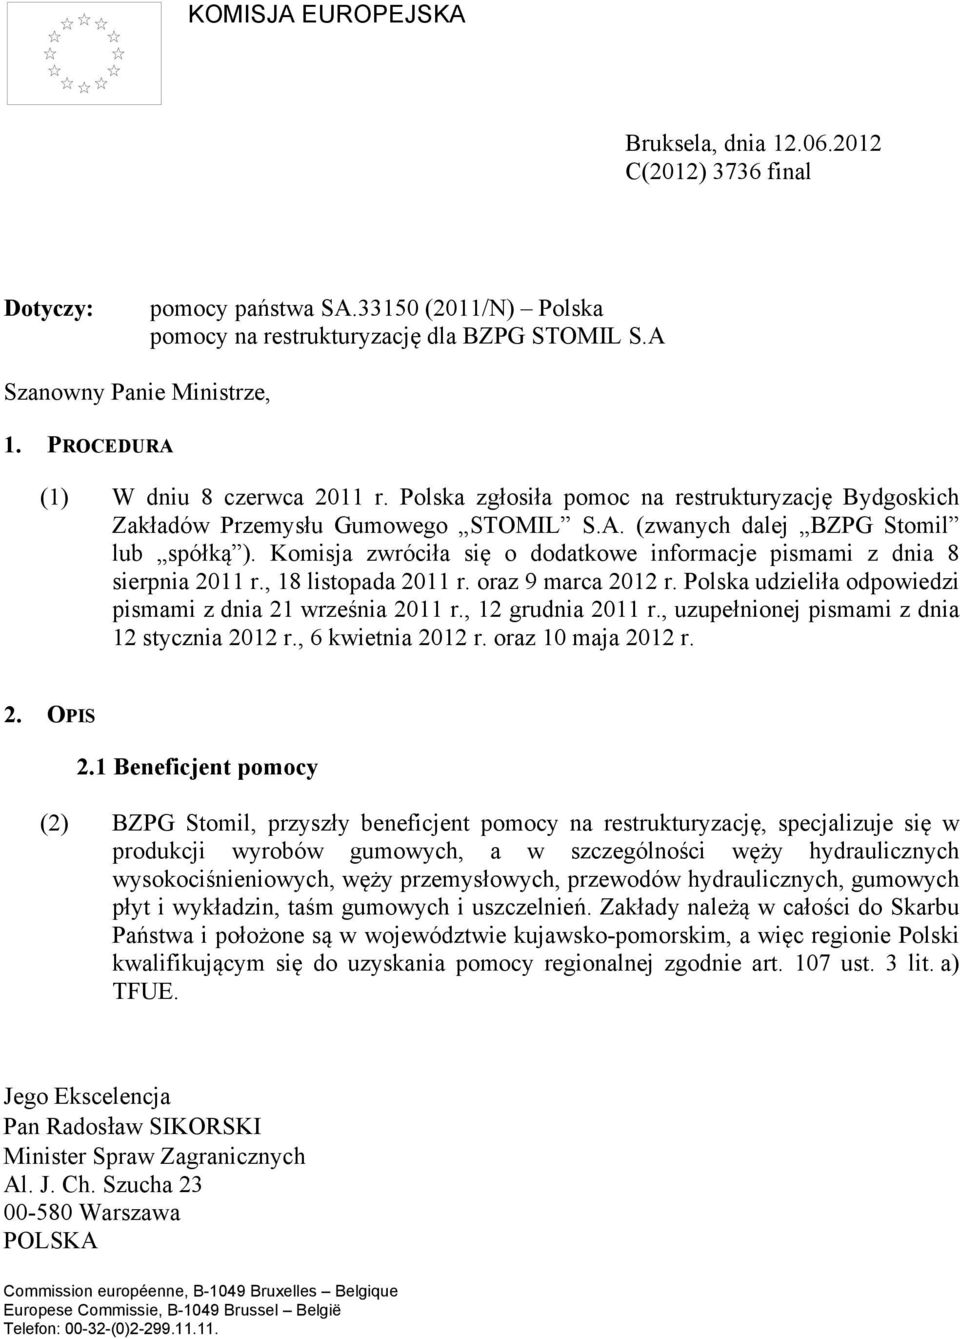 Komisja zwróciła się o dodatkowe informacje pismami z dnia 8 sierpnia 2011 r., 18 listopada 2011 r. oraz 9 marca 2012 r. Polska udzieliła odpowiedzi pismami z dnia 21 września 2011 r.